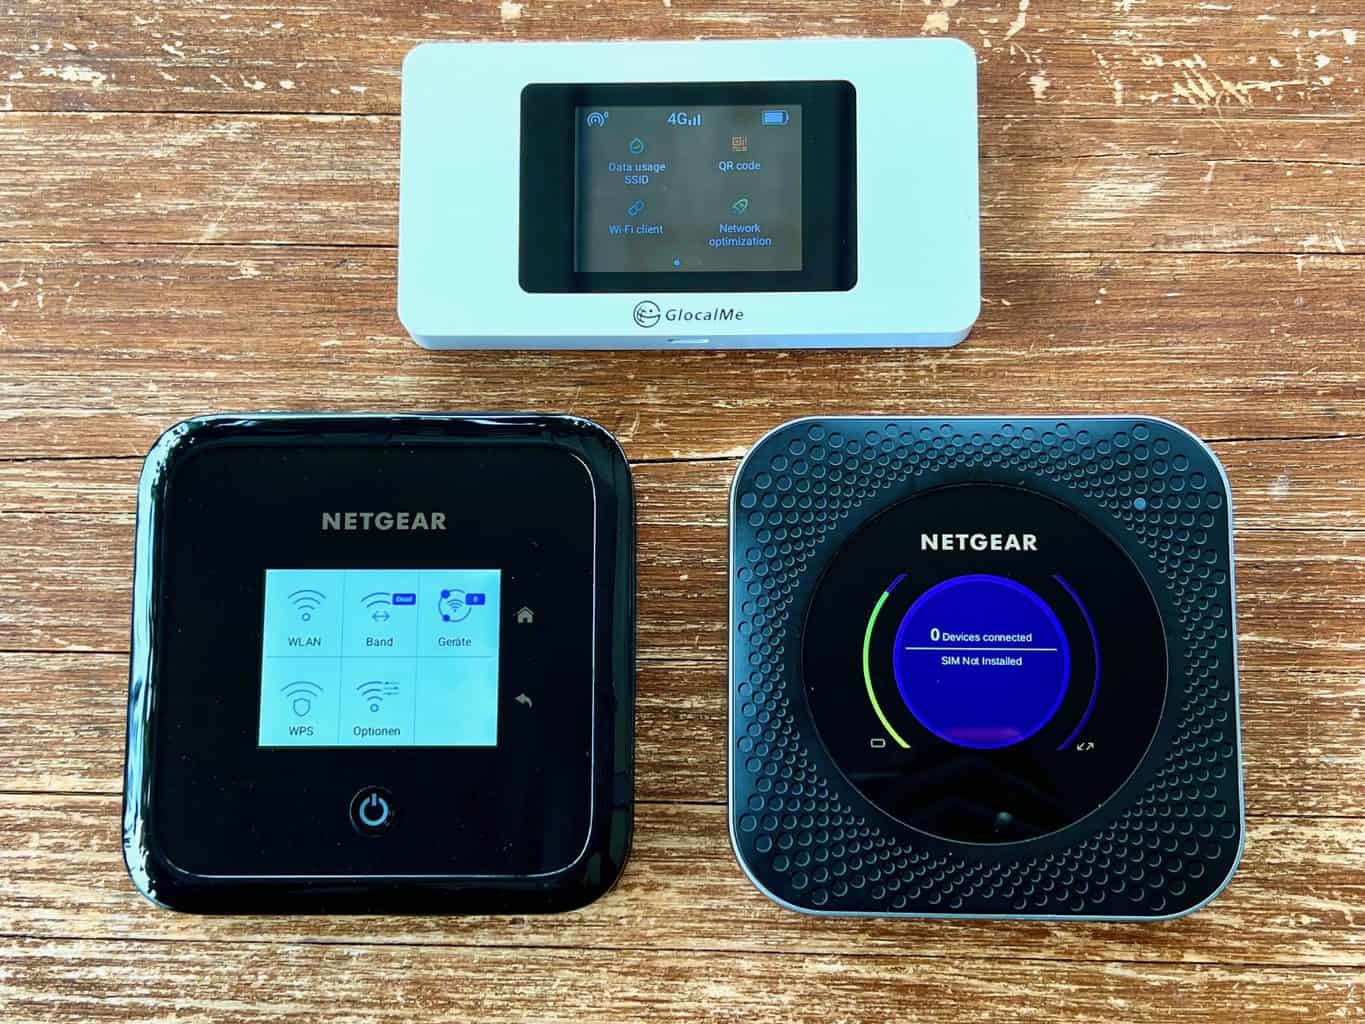 Internet-Router-Wifi-Mobilfunk-im-Test-und-Vergleich-Netgear-Nighthawk-M1-M5-GlocalMe-G3X